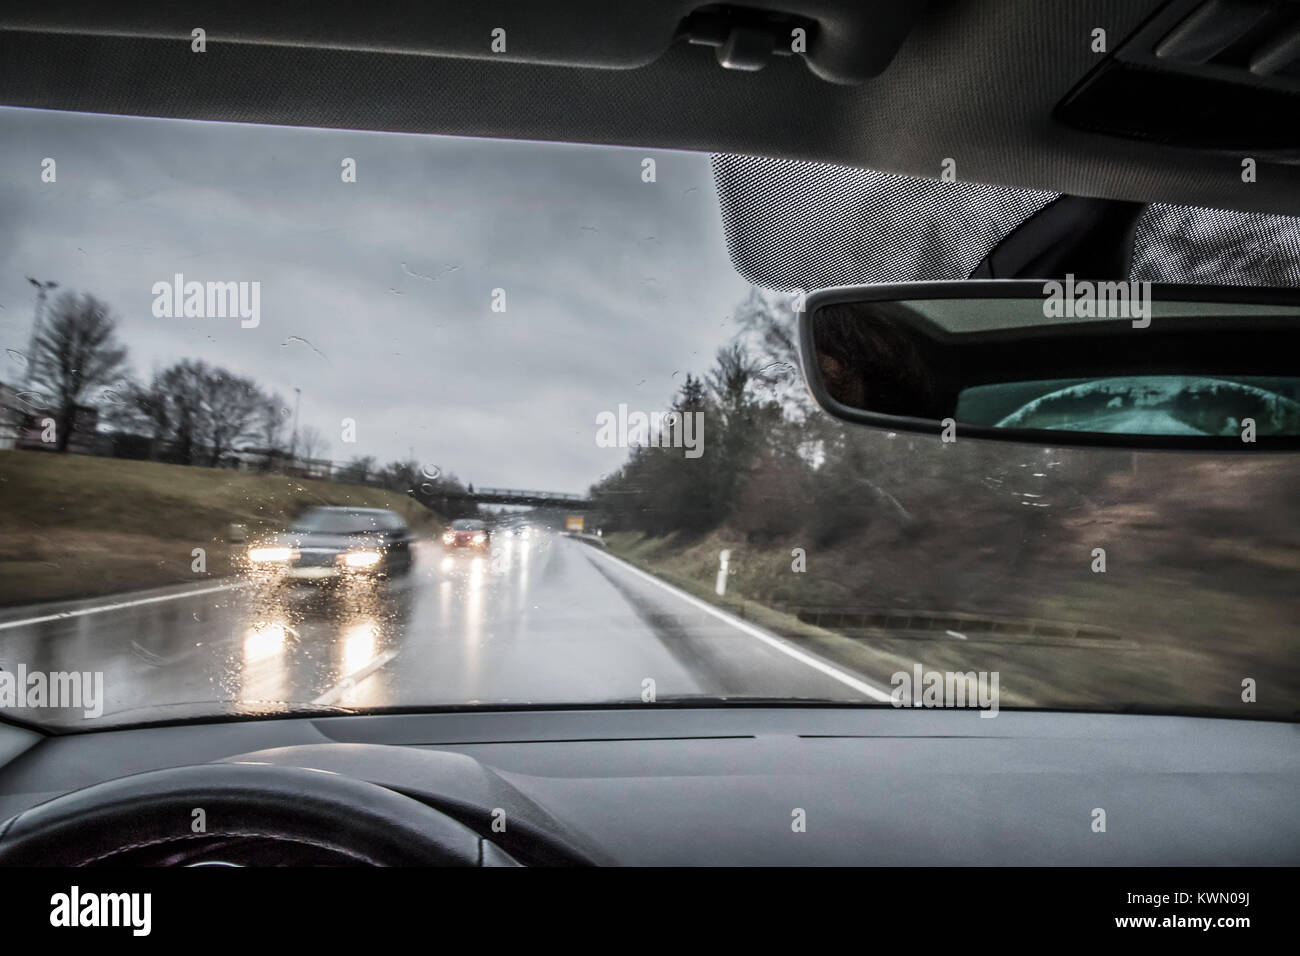 cierre de una máscara blanca colgando del espejo retrovisor de un coche en  la carretera, mientras el conductor no la lleva puesta Fotografía de stock  - Alamy